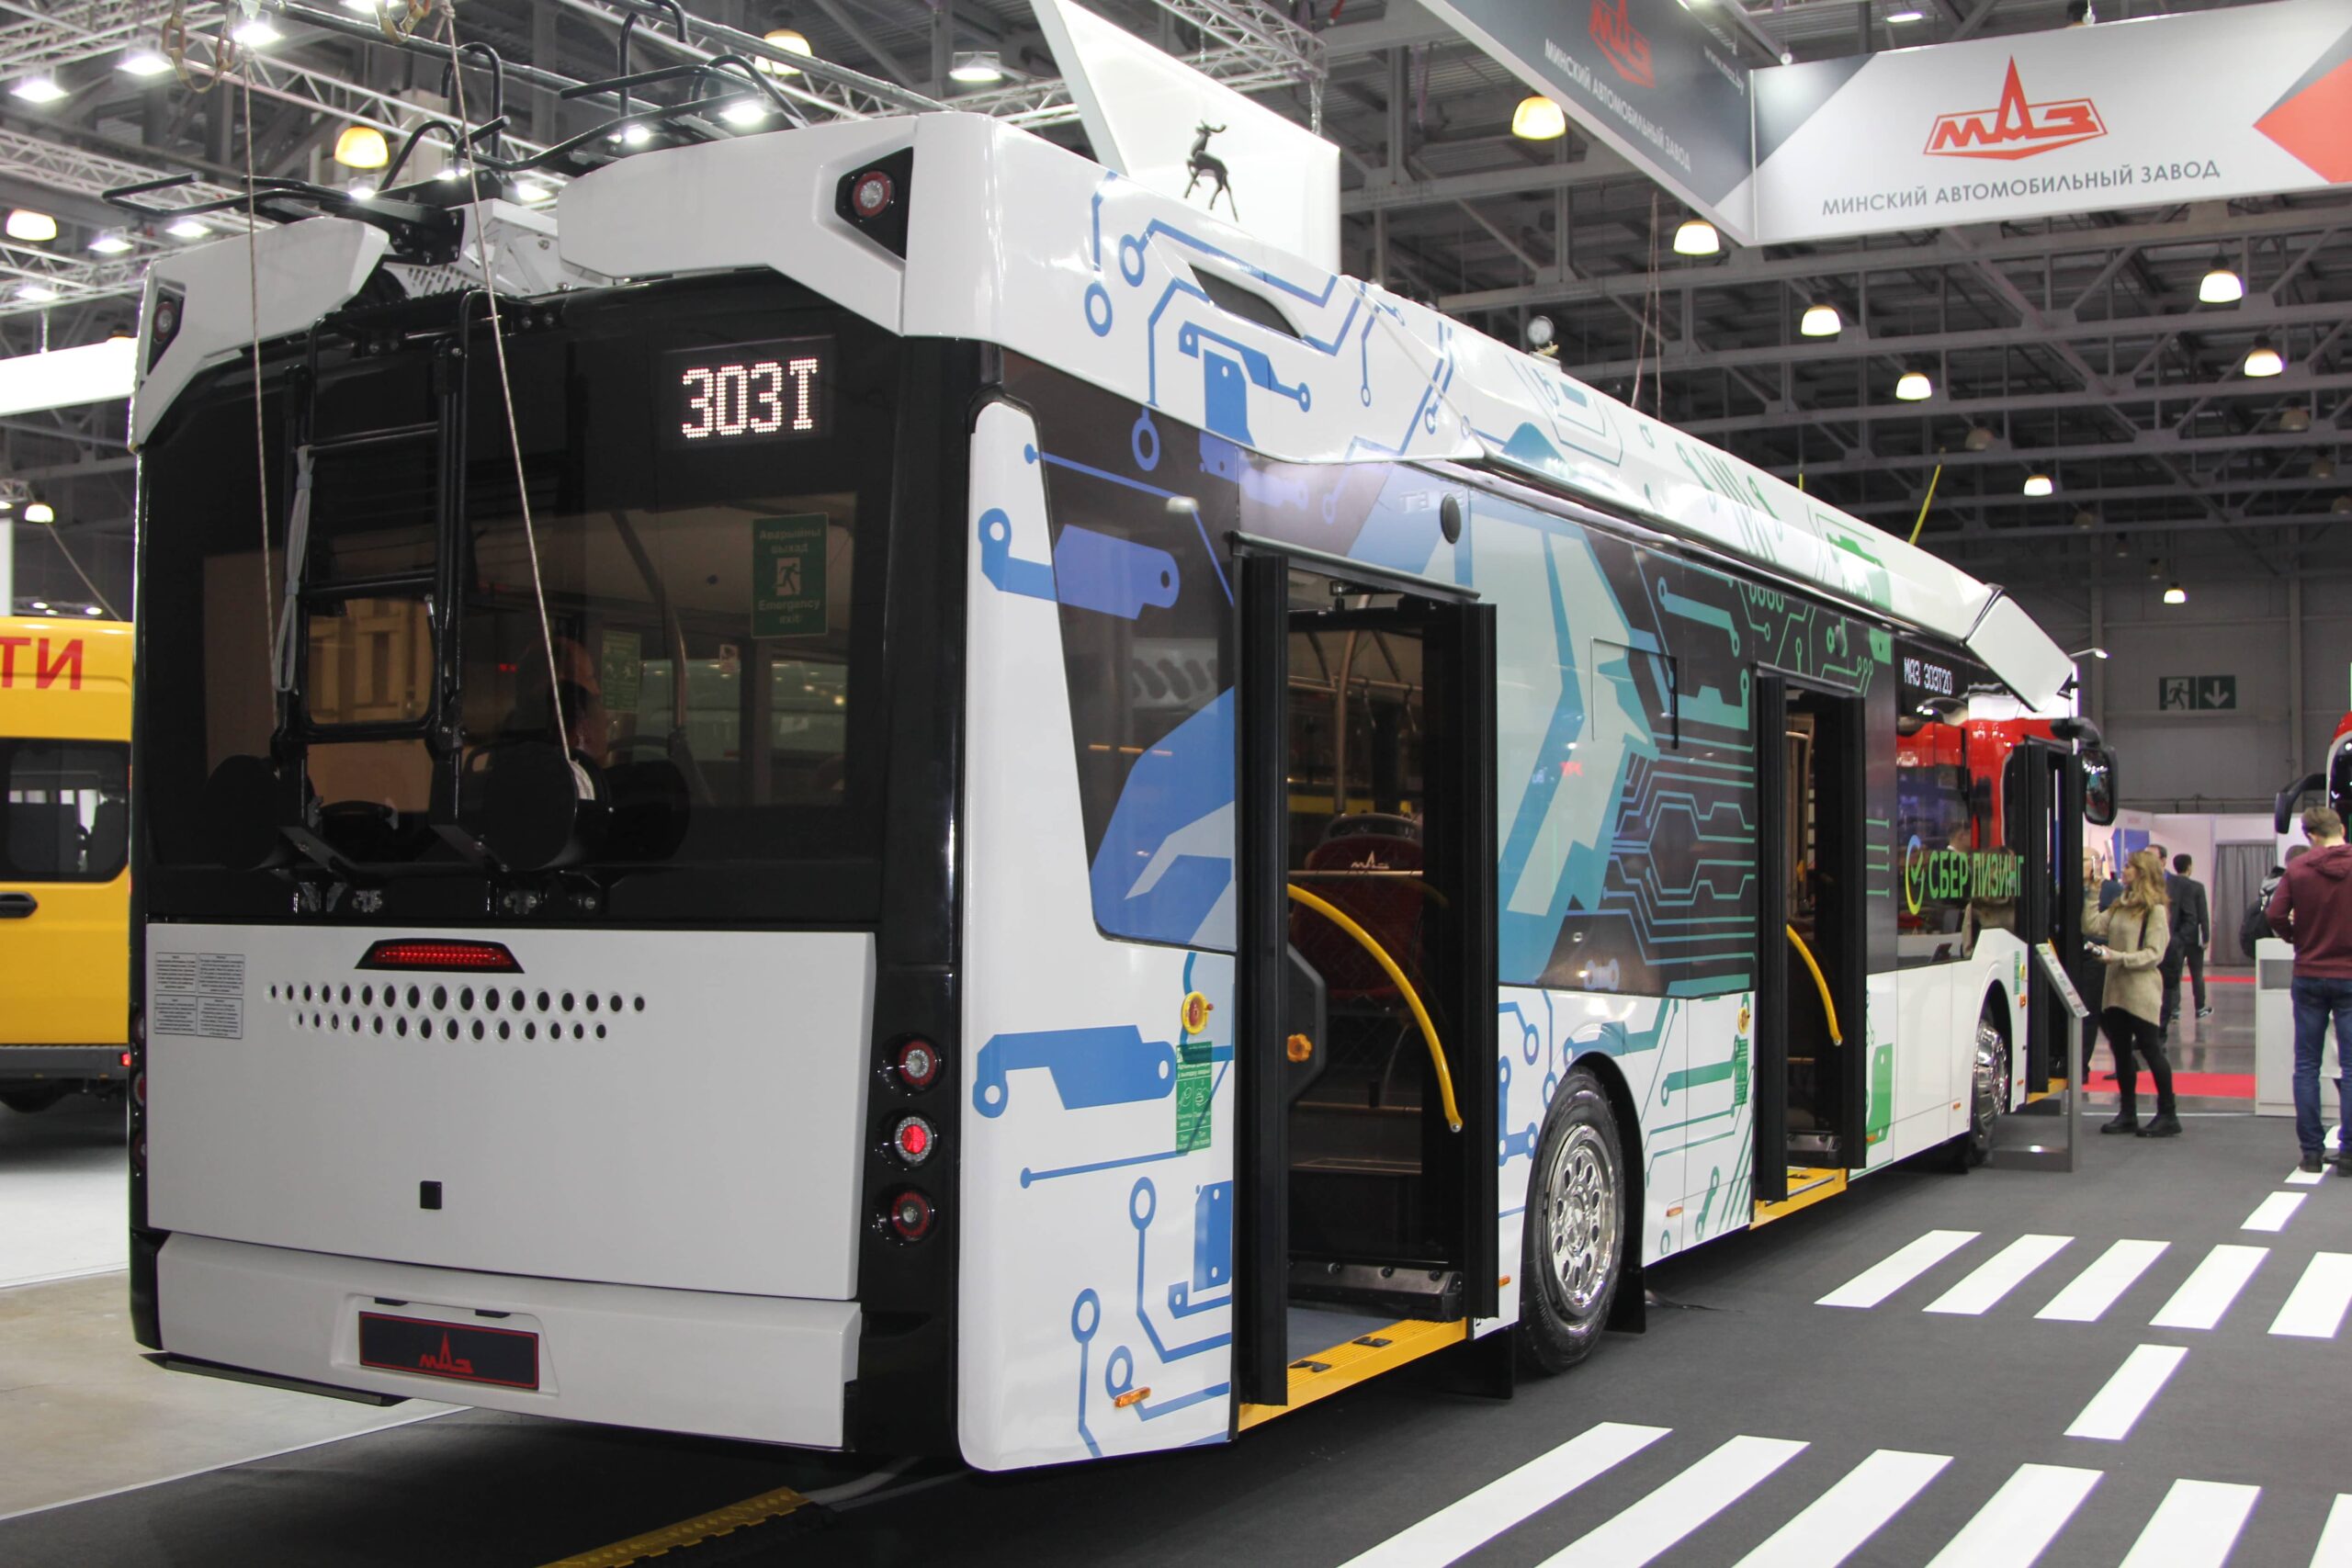 МАЗ представил импортозамещенный троллейбус